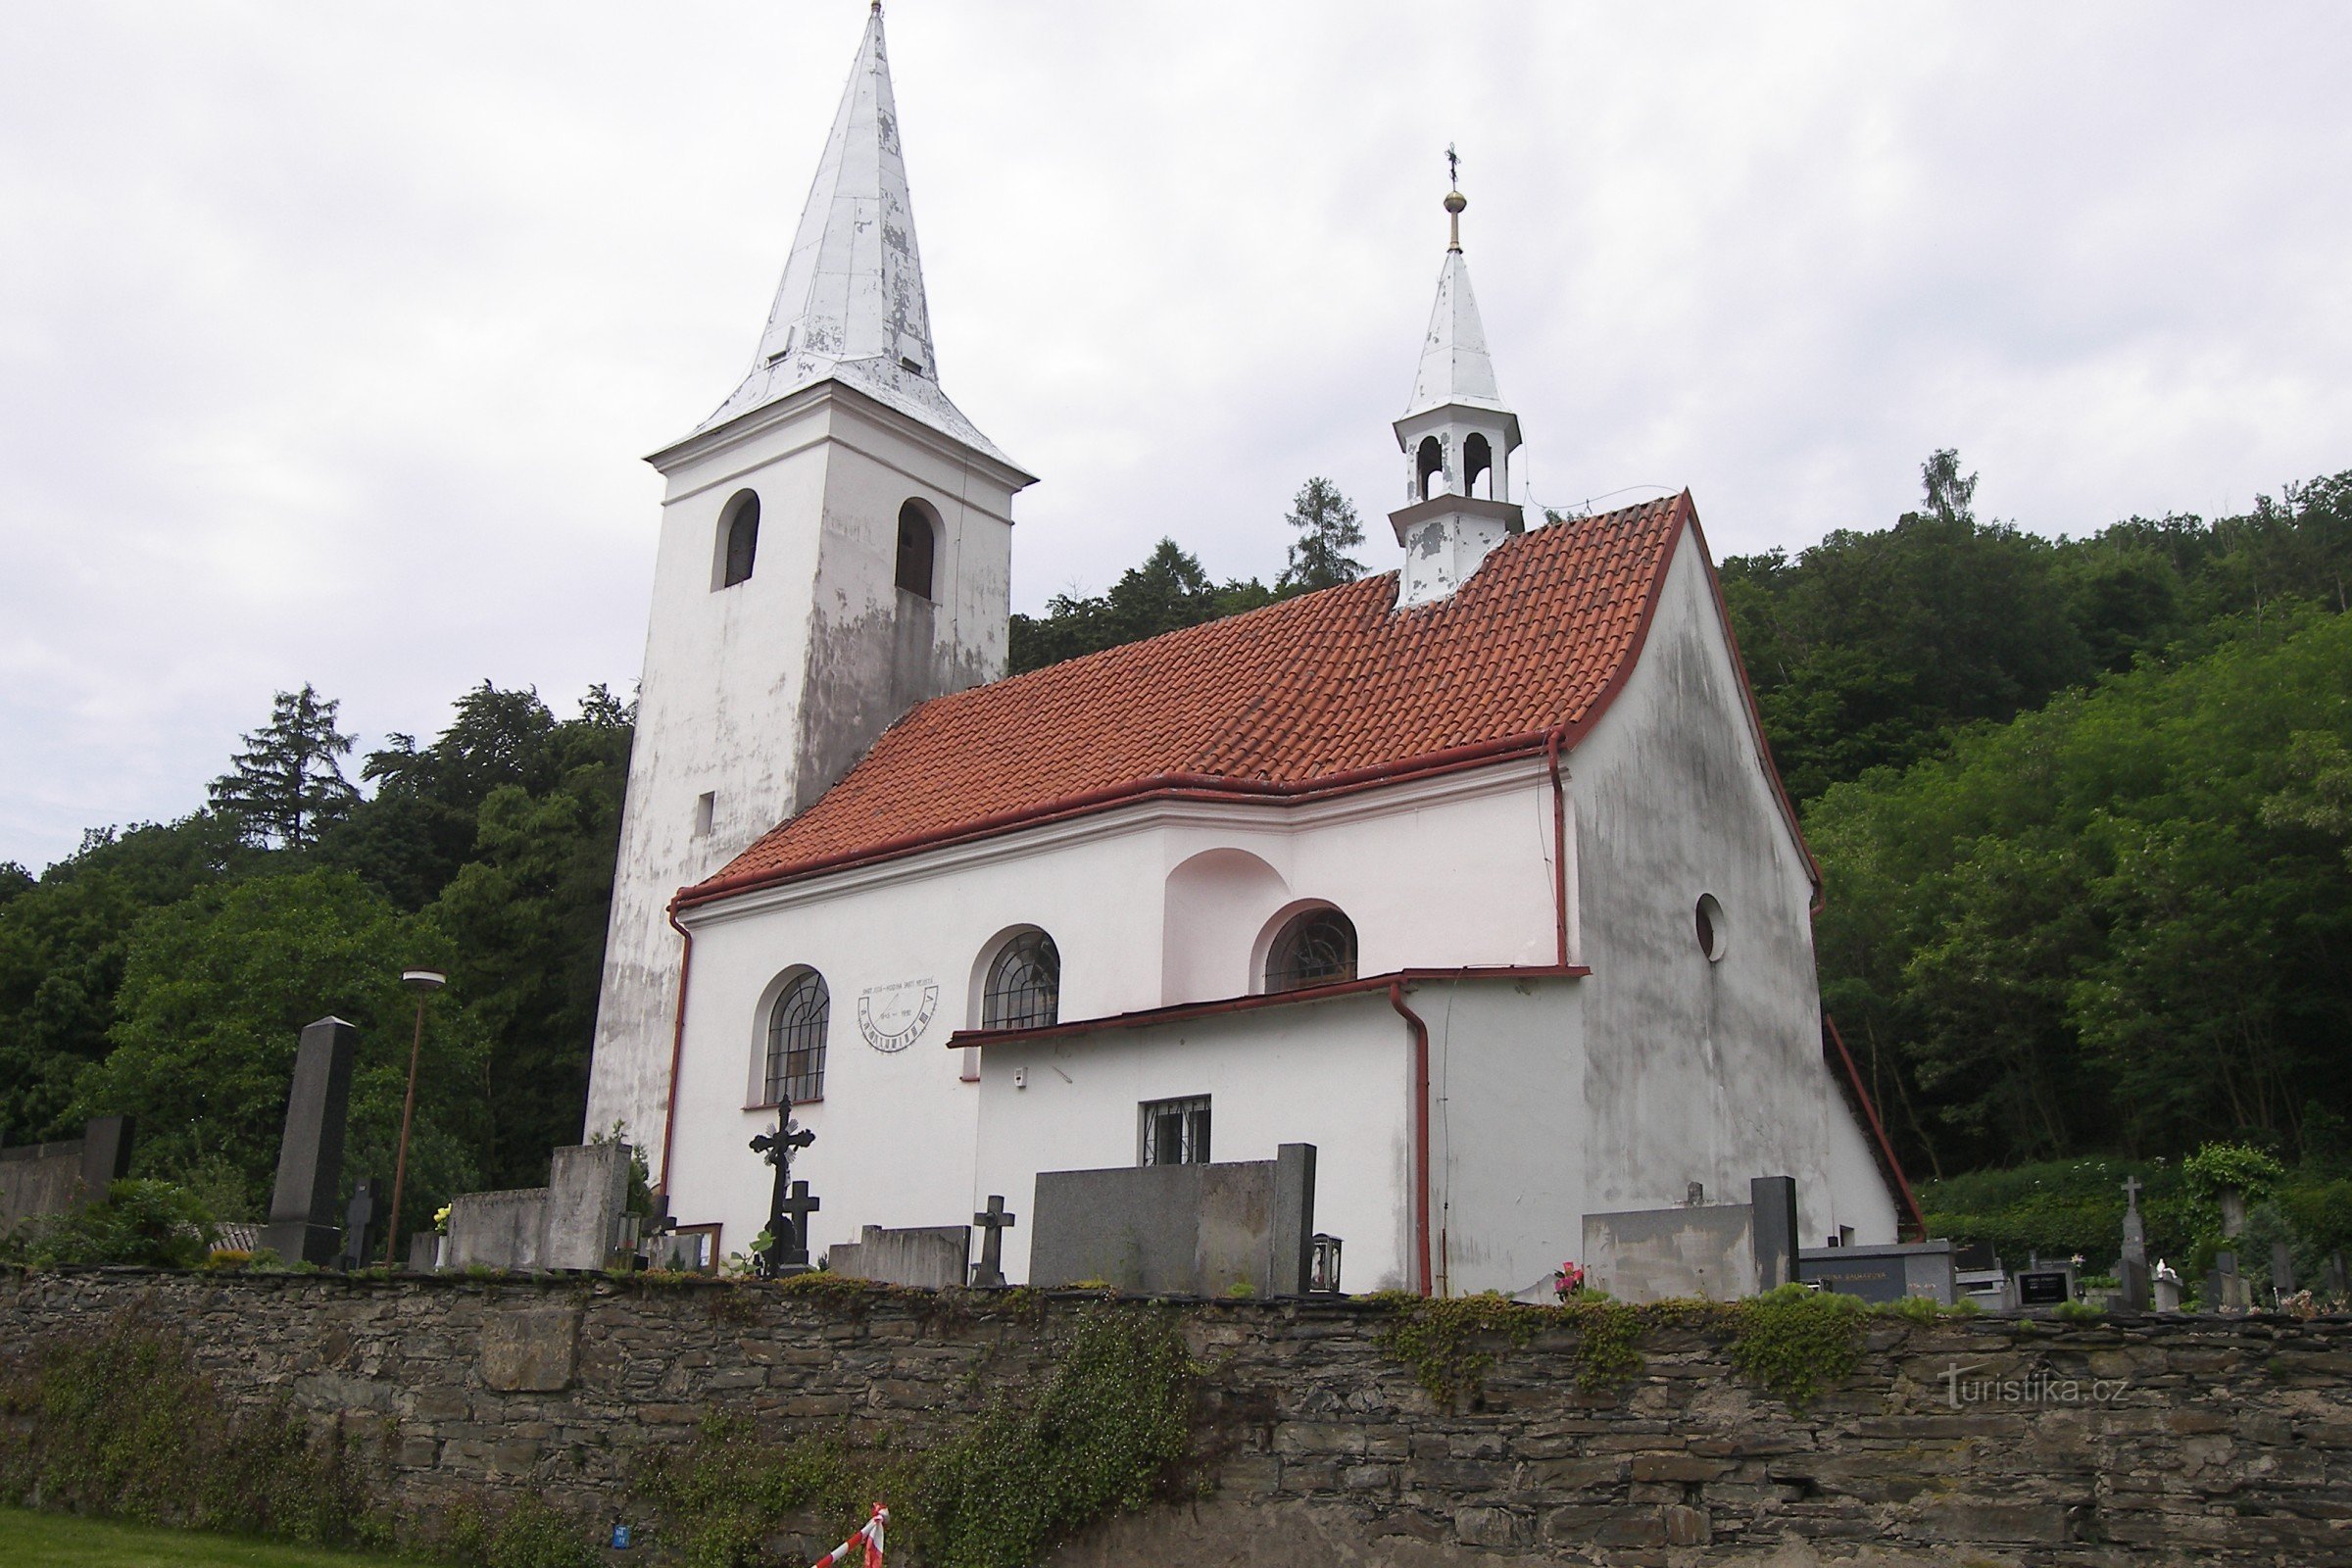 Podhoří - igreja de St. Havel